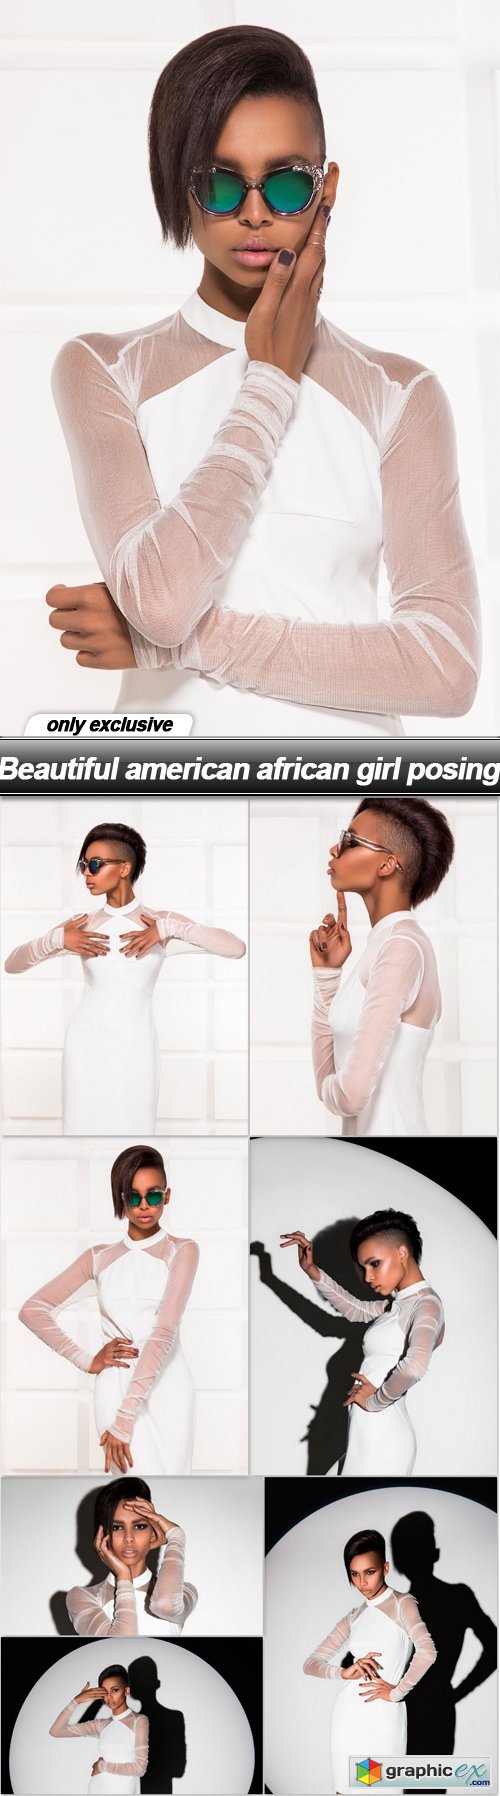 Beautiful american african girl posing - 8 UHQ JPEG